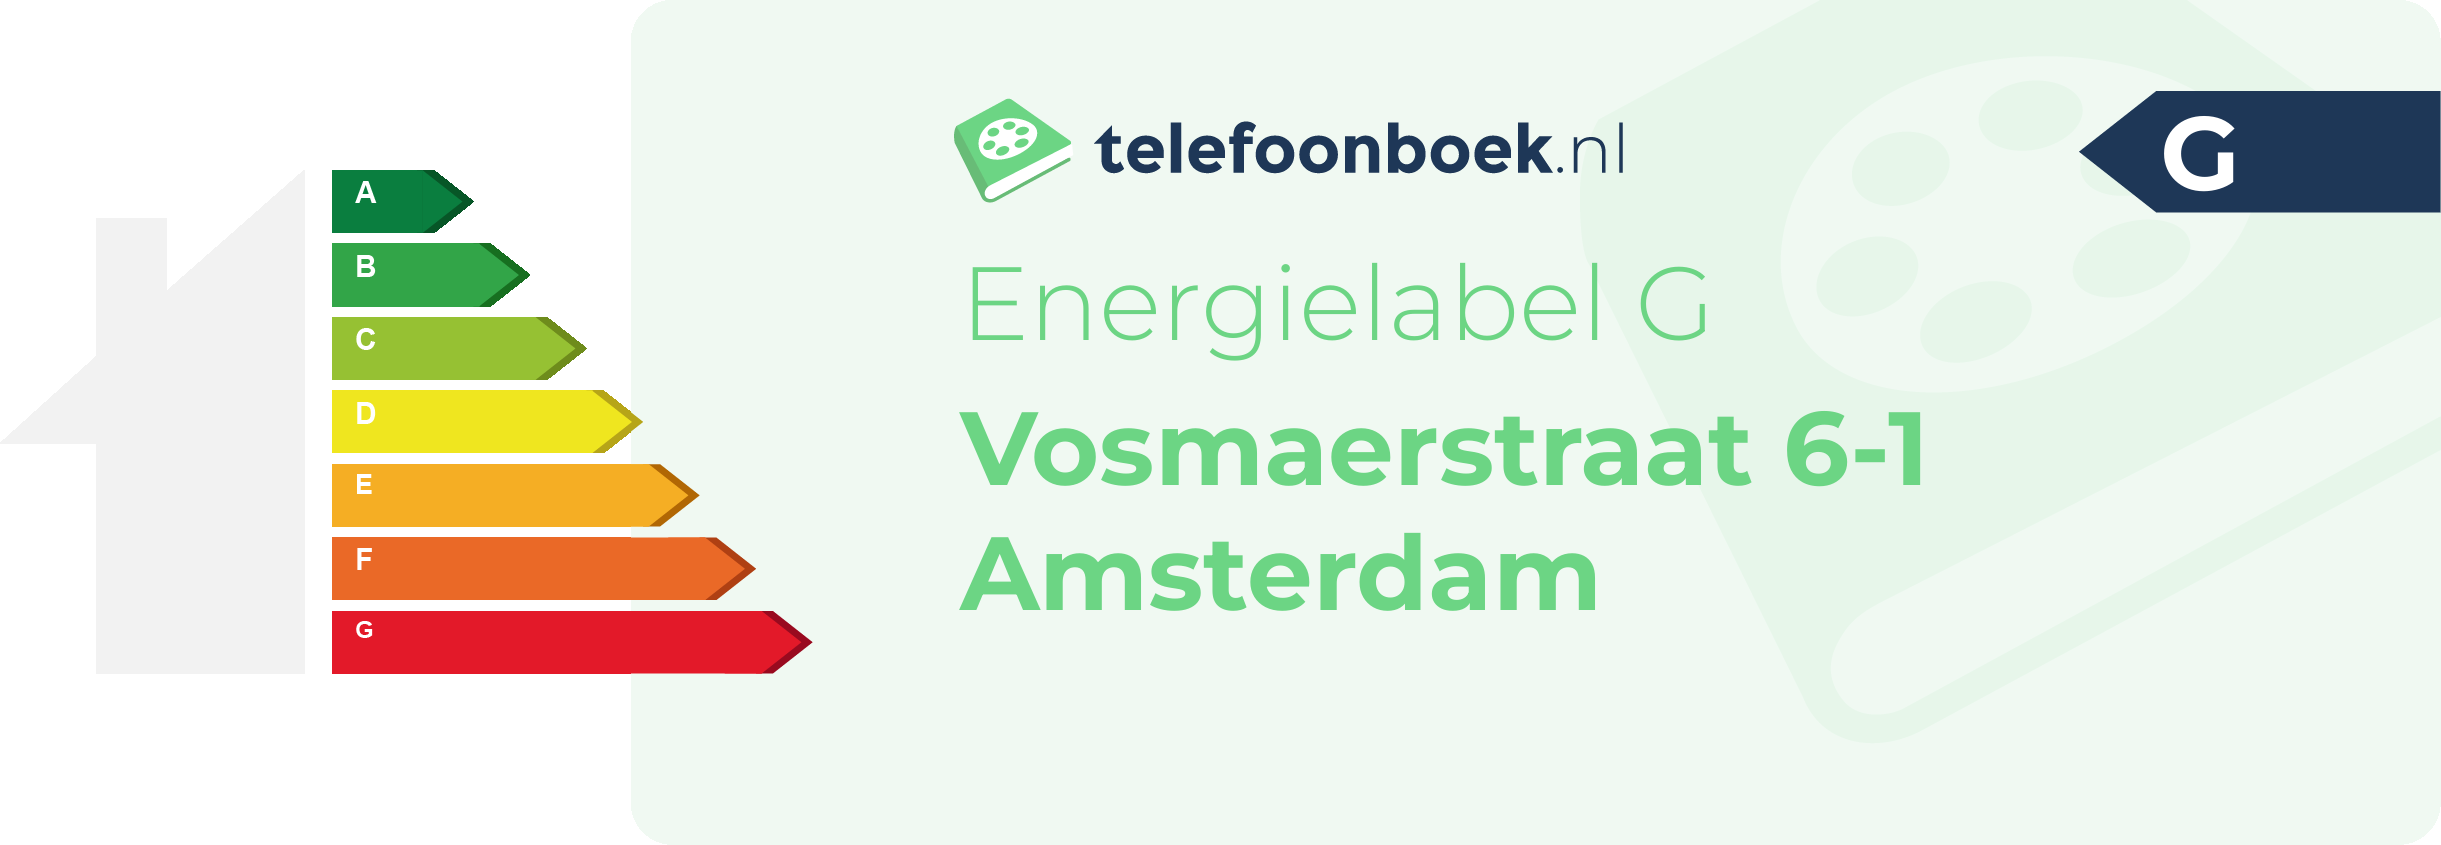 Energielabel Vosmaerstraat 6-1 Amsterdam